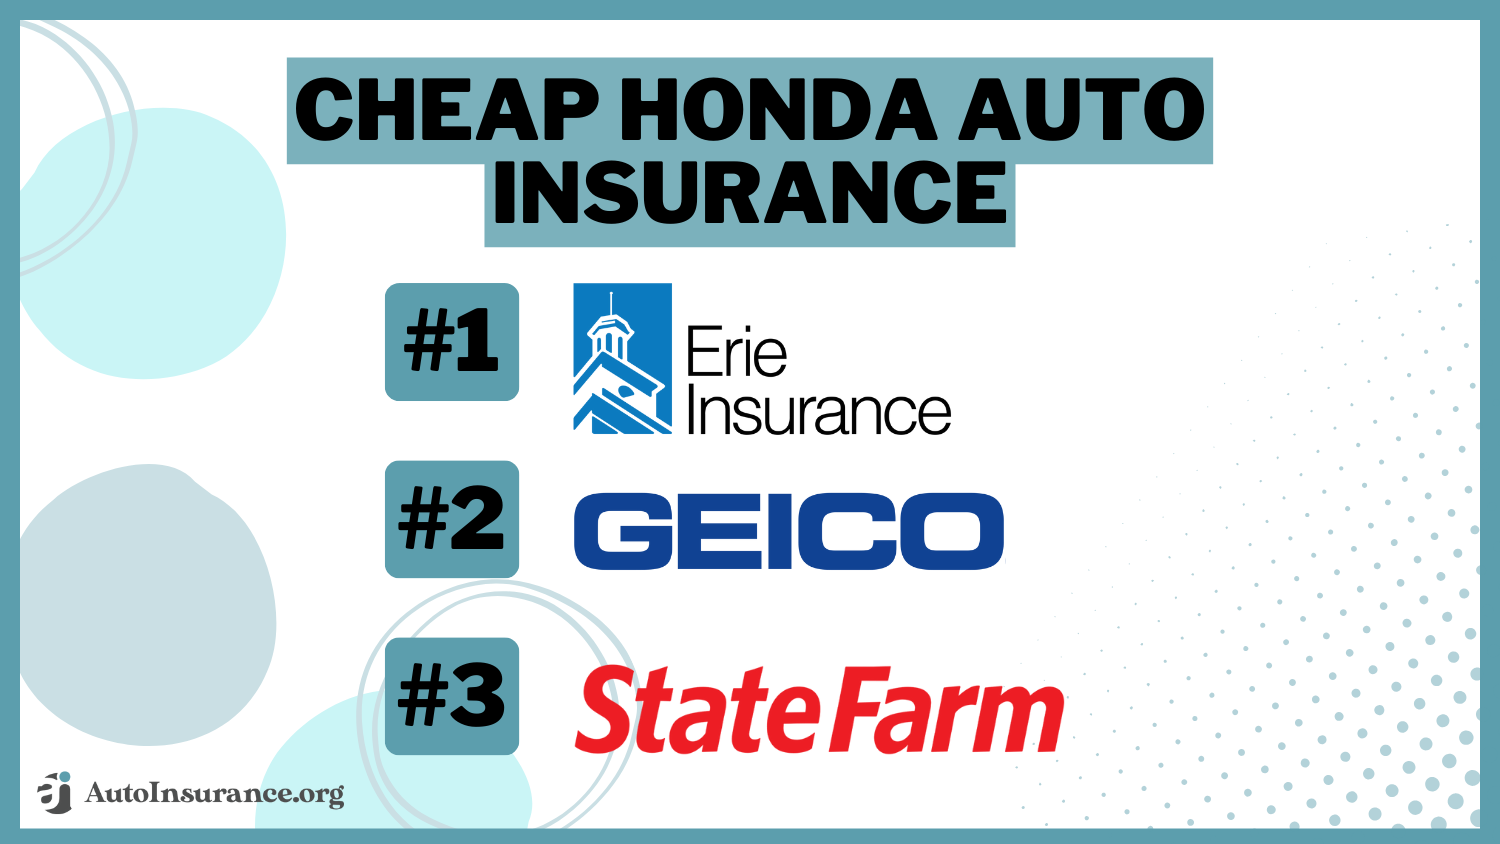 Cheap Honda Auto Insurance - Erie, Geico, State Farm